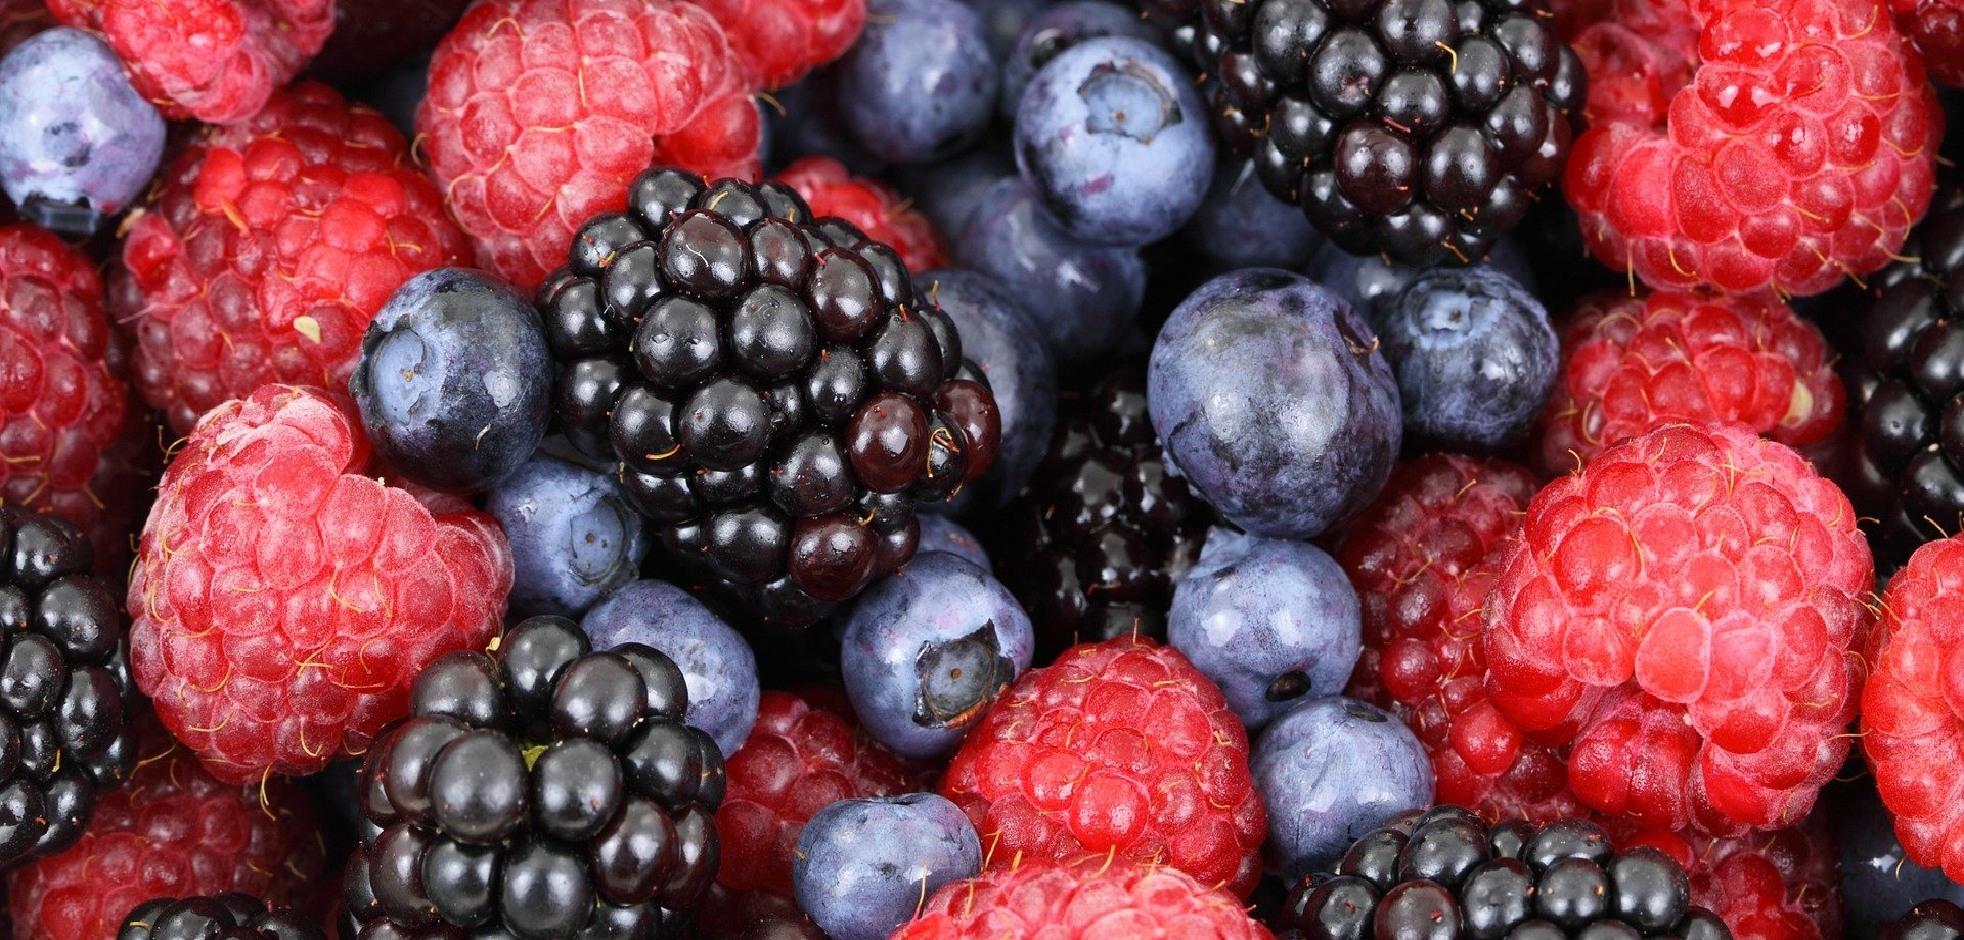 Close up image of blackberries, blueberries, and raspberries